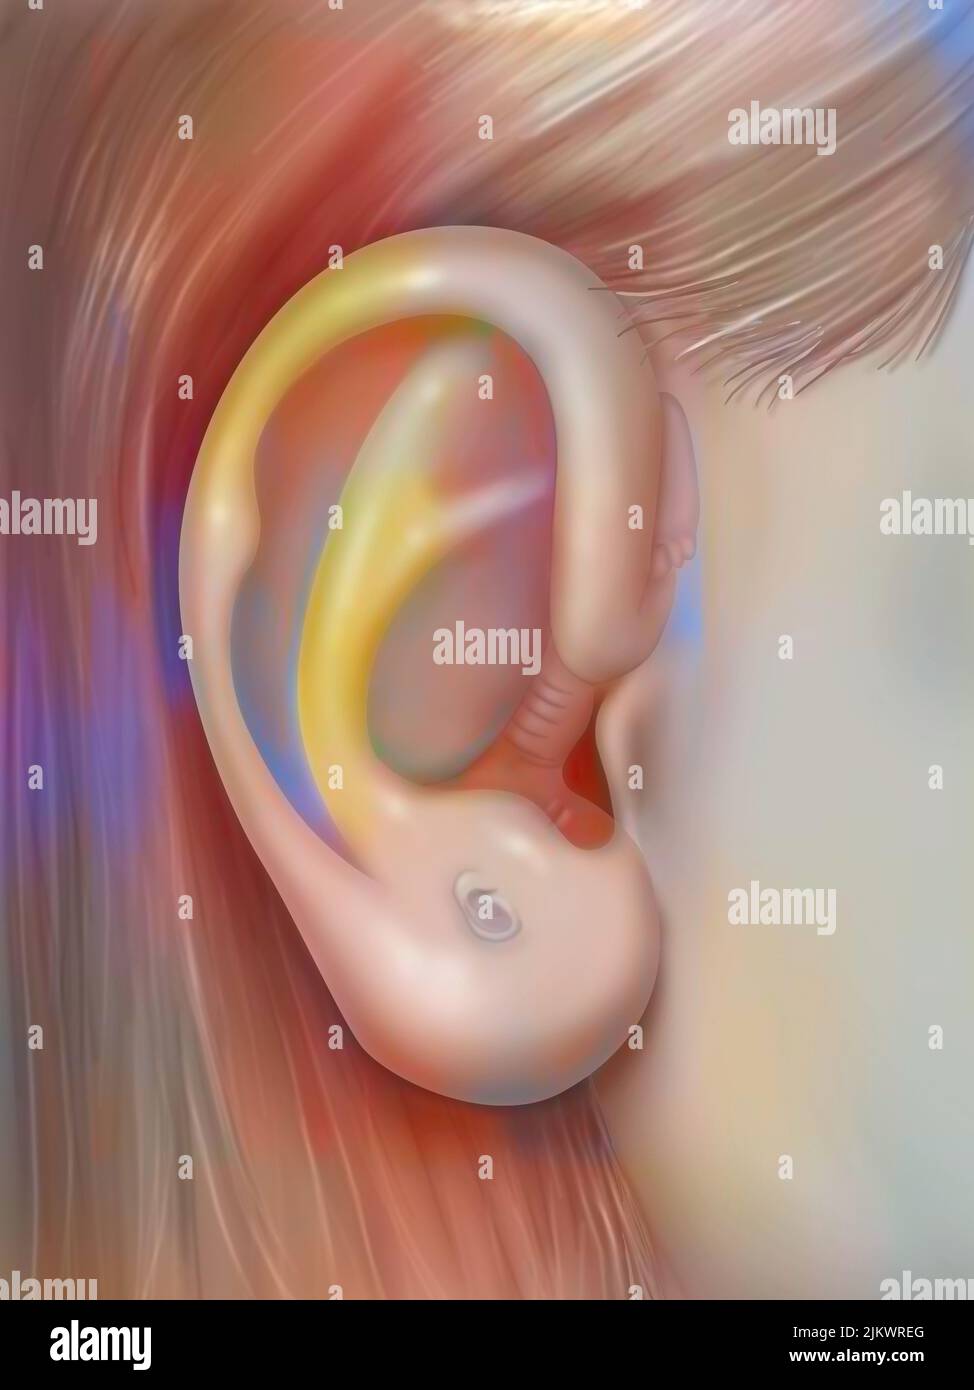 Auricoloterapia: Orecchio e evidenza della sua somiglianza con un feto. Foto Stock